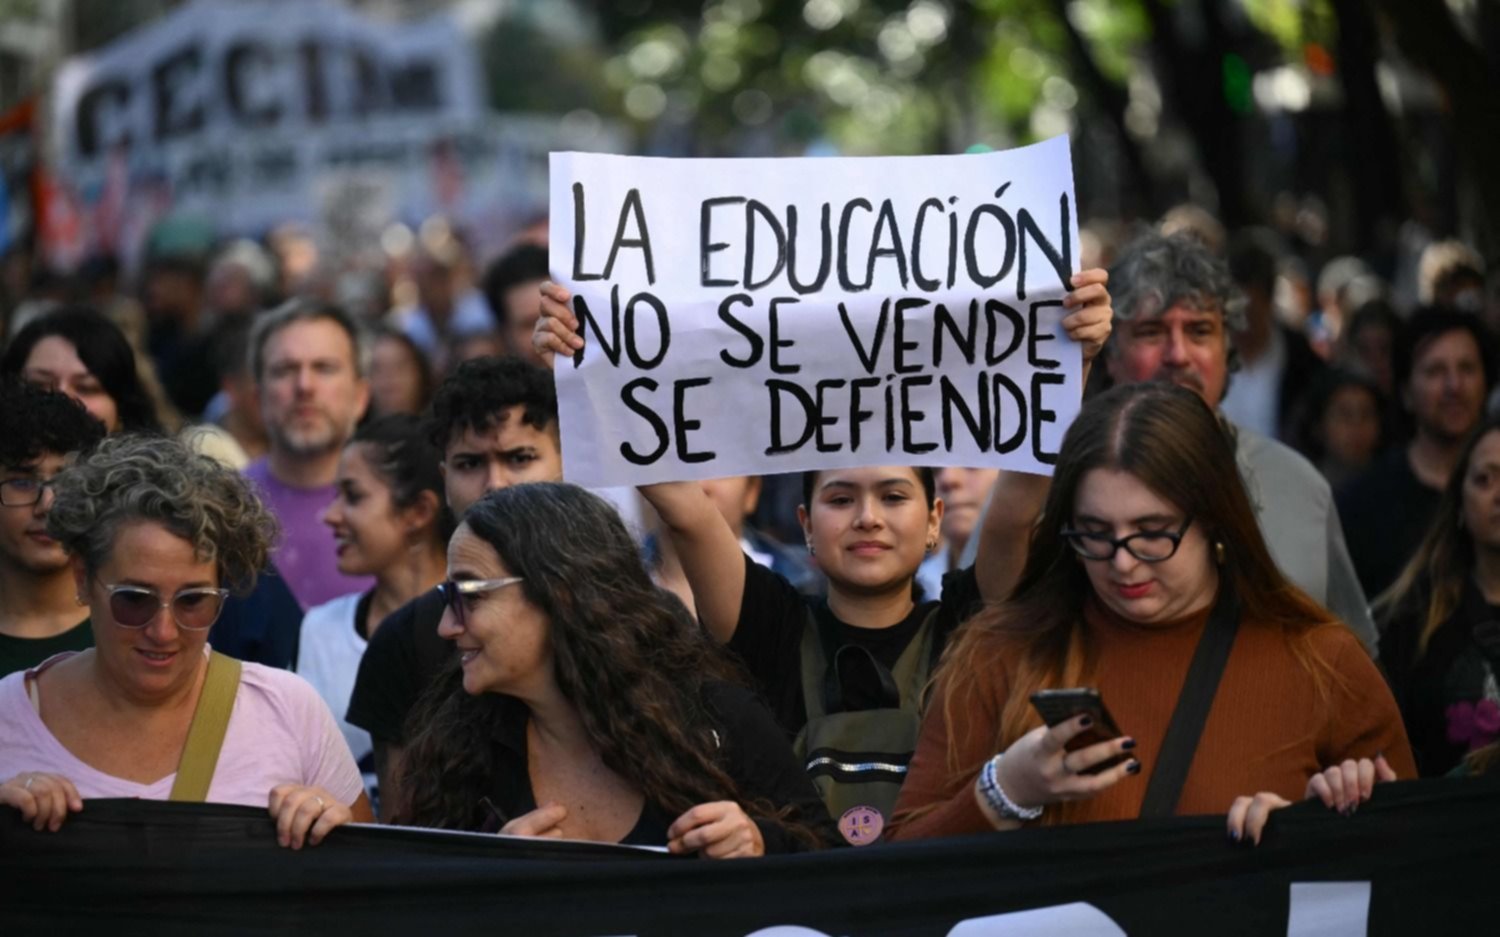 En FOTOS | Las frases en los carteles en la marcha estudiantil